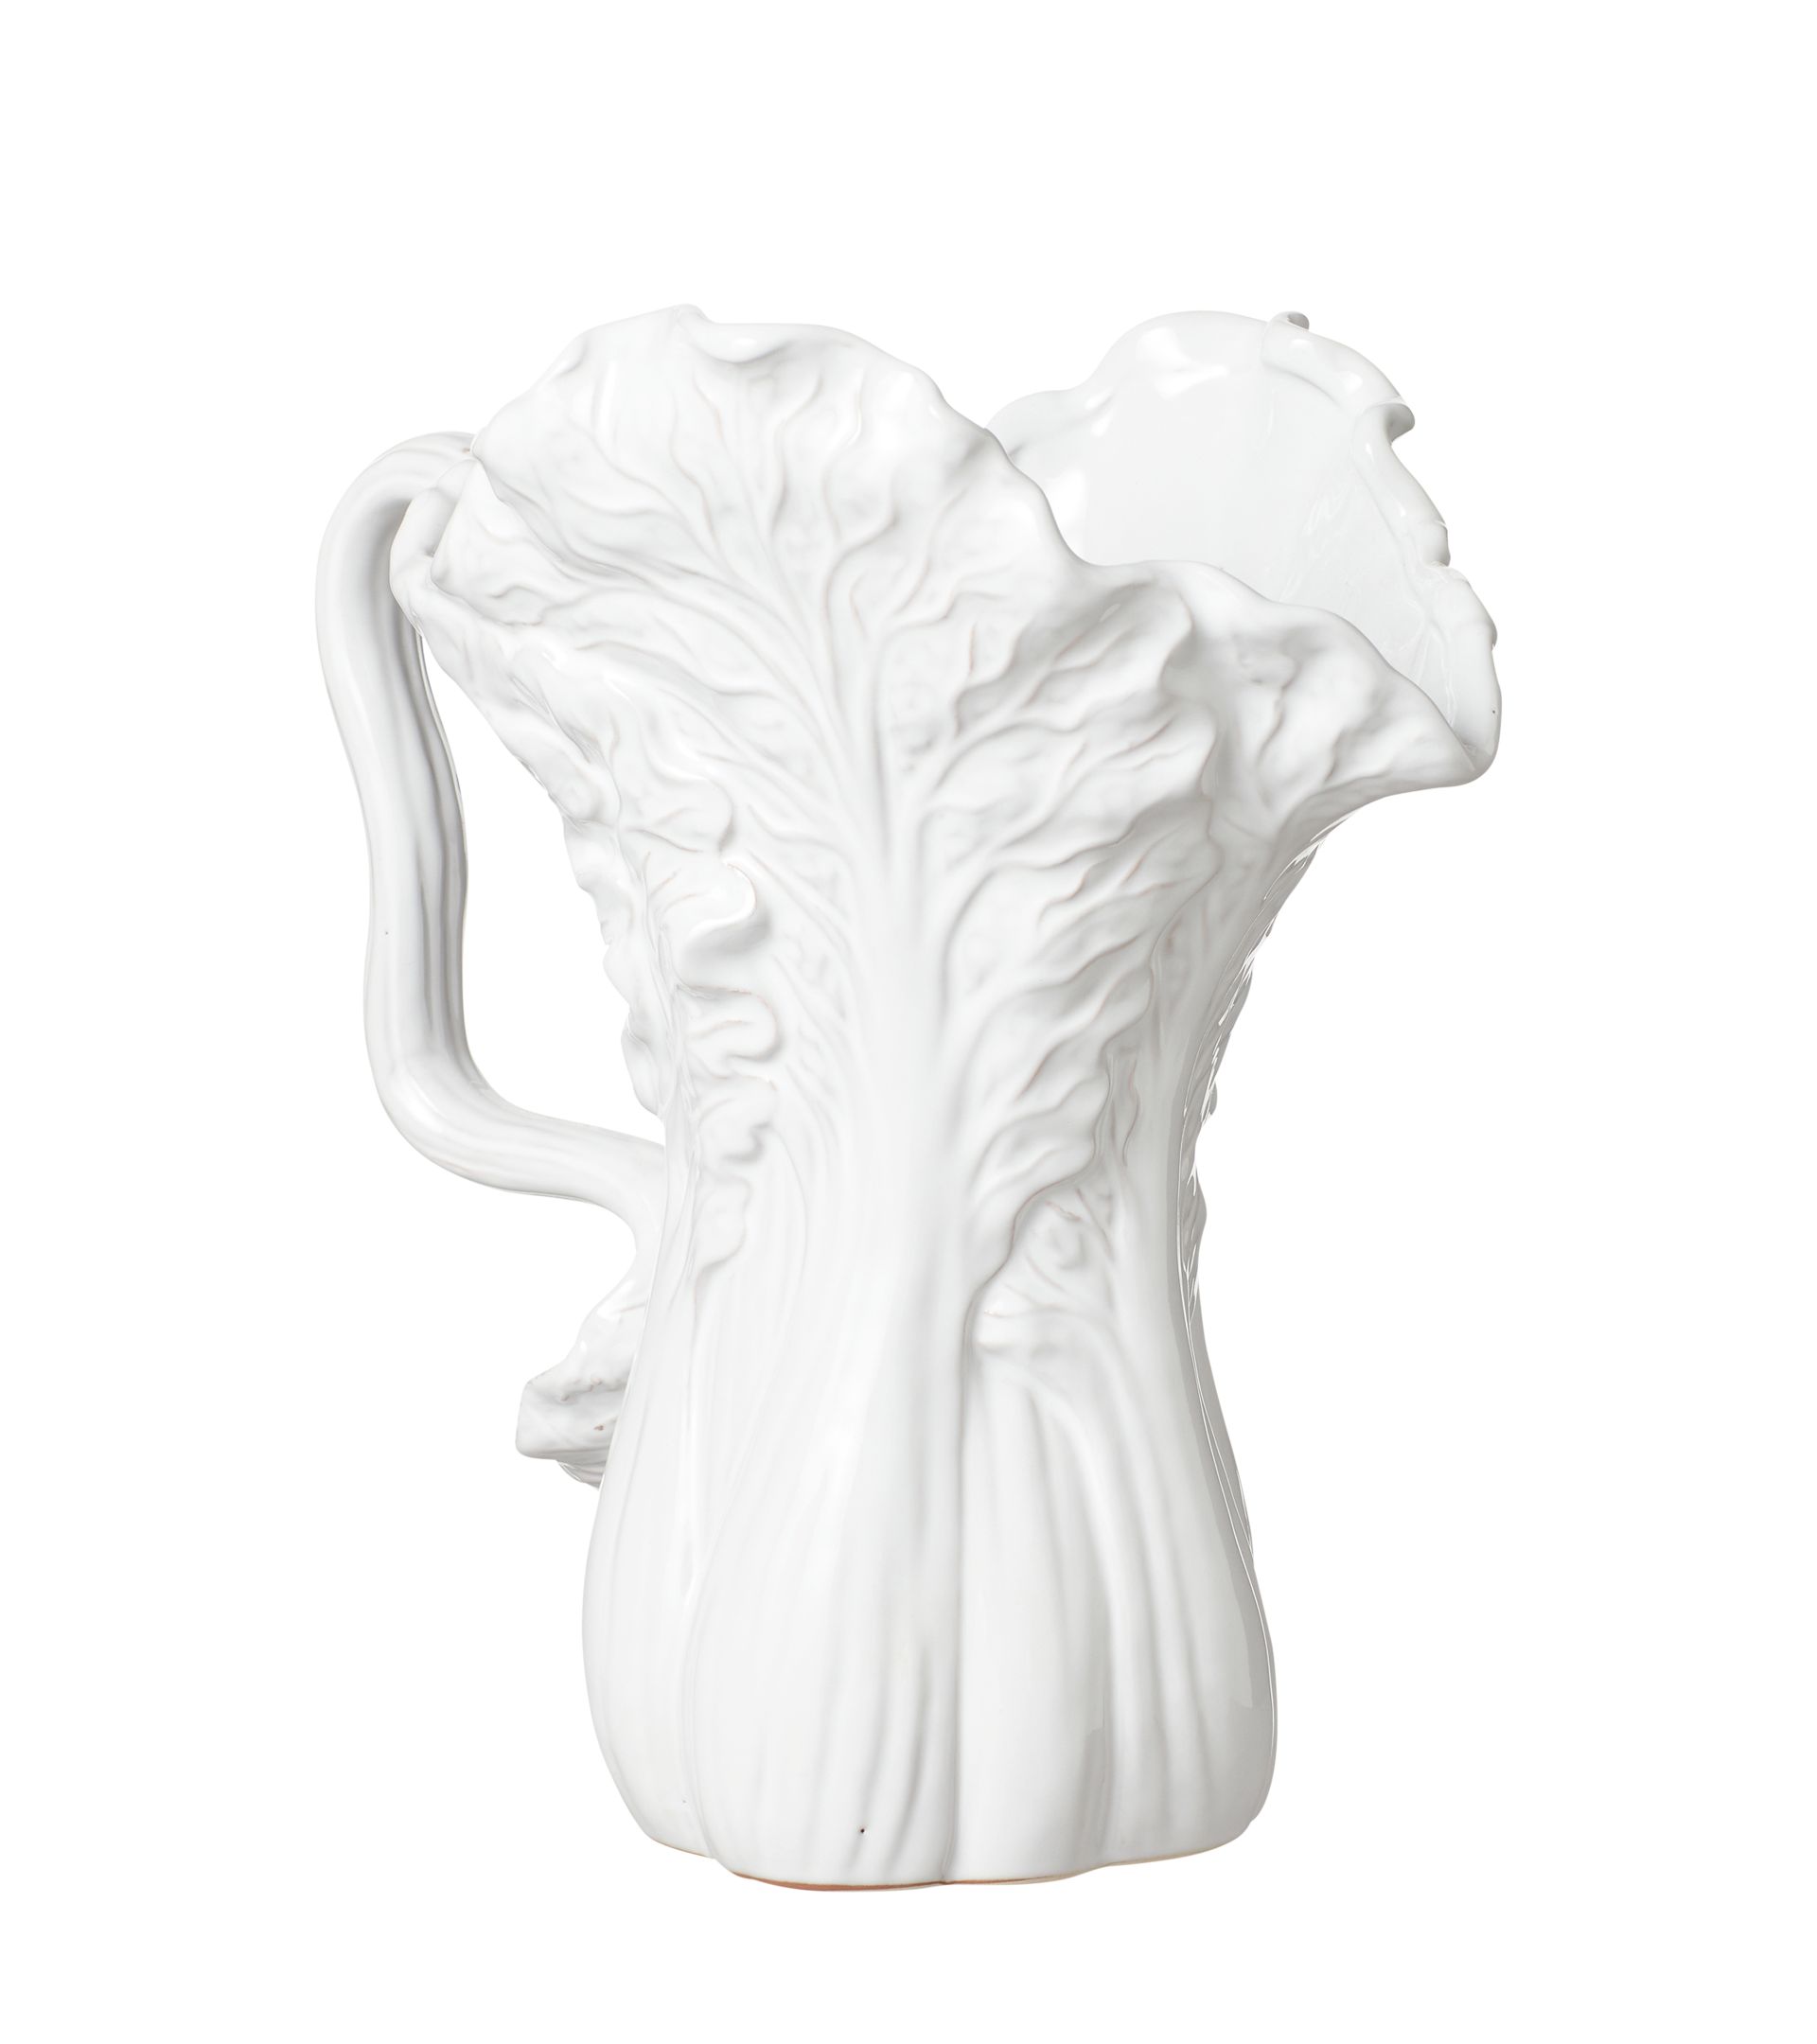 Stoneware Chinese Cabbage Jug - White | OKA US | OKA US